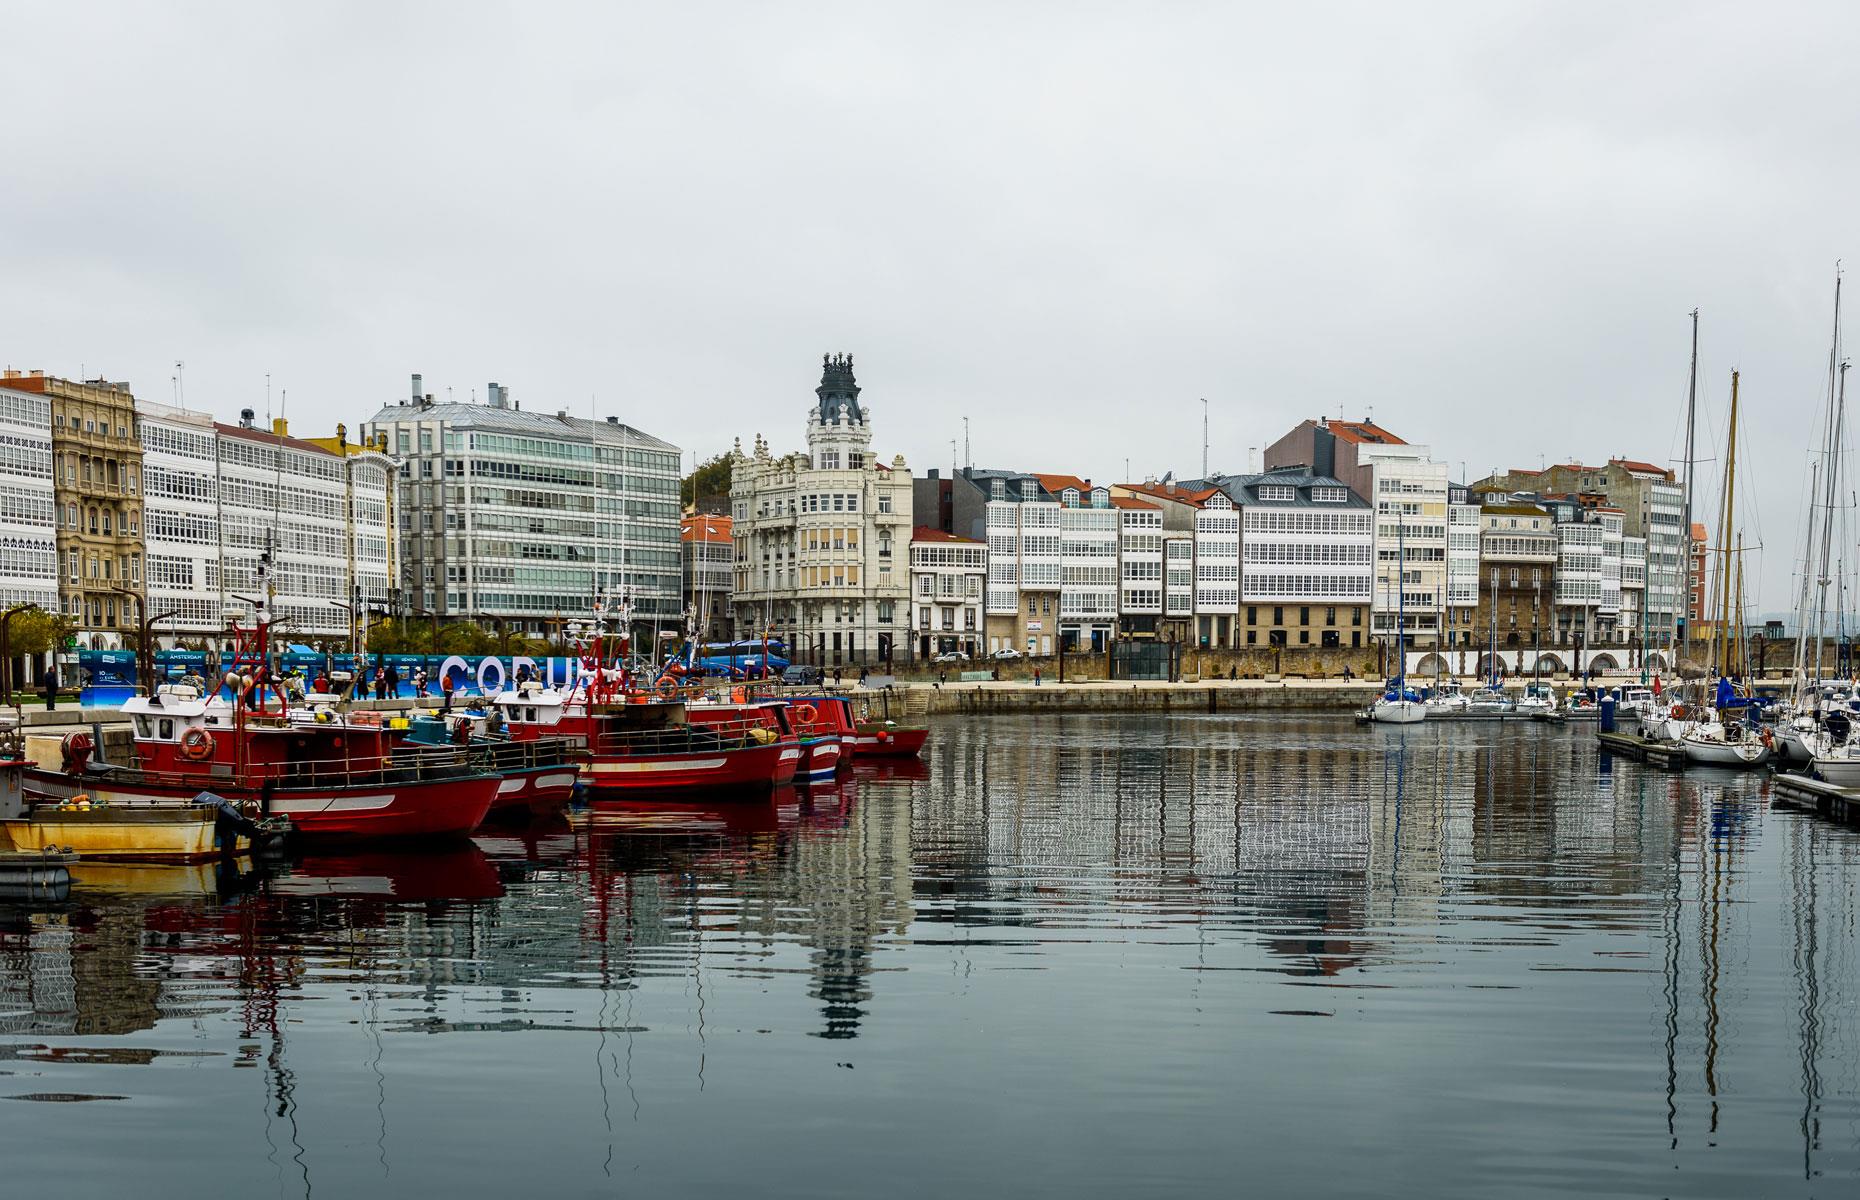 La Coruña, Spain: Inditex